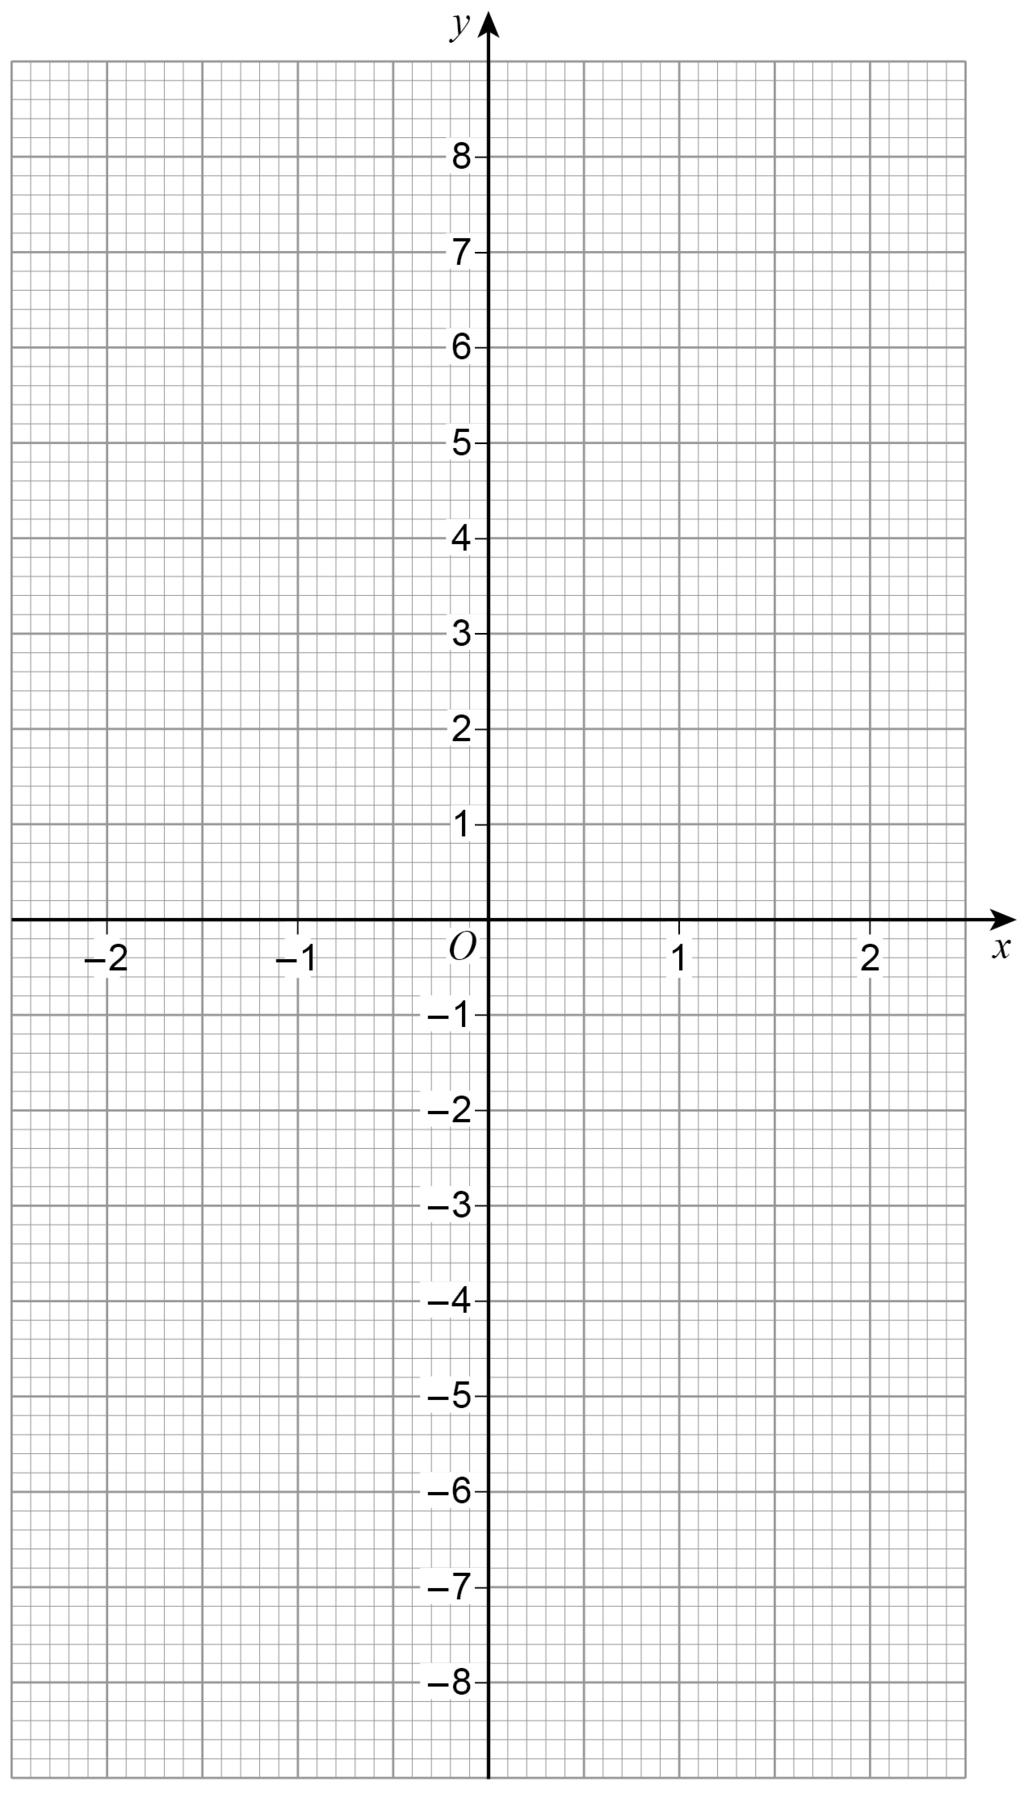 26 27 (a) h(x) = 3 x for all values of x On the grid, draw the